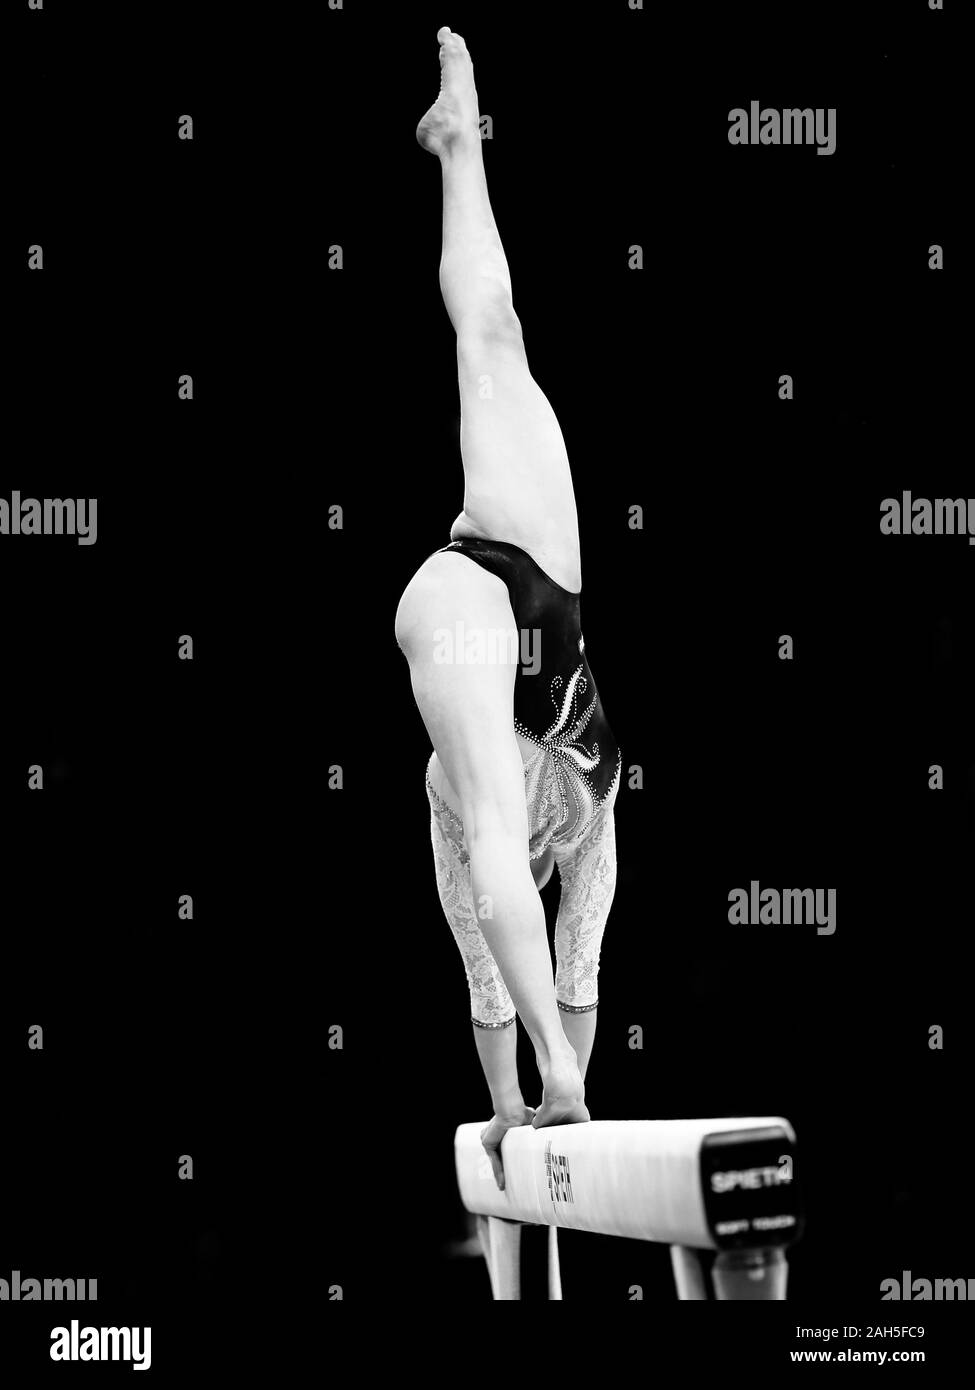 Szczecin, Polonia, 11 Aprile 2019: Elisa Iorio dell Italia compete sul fascio di equilibrio durante l'Unione dei campionati di ginnastica Foto Stock